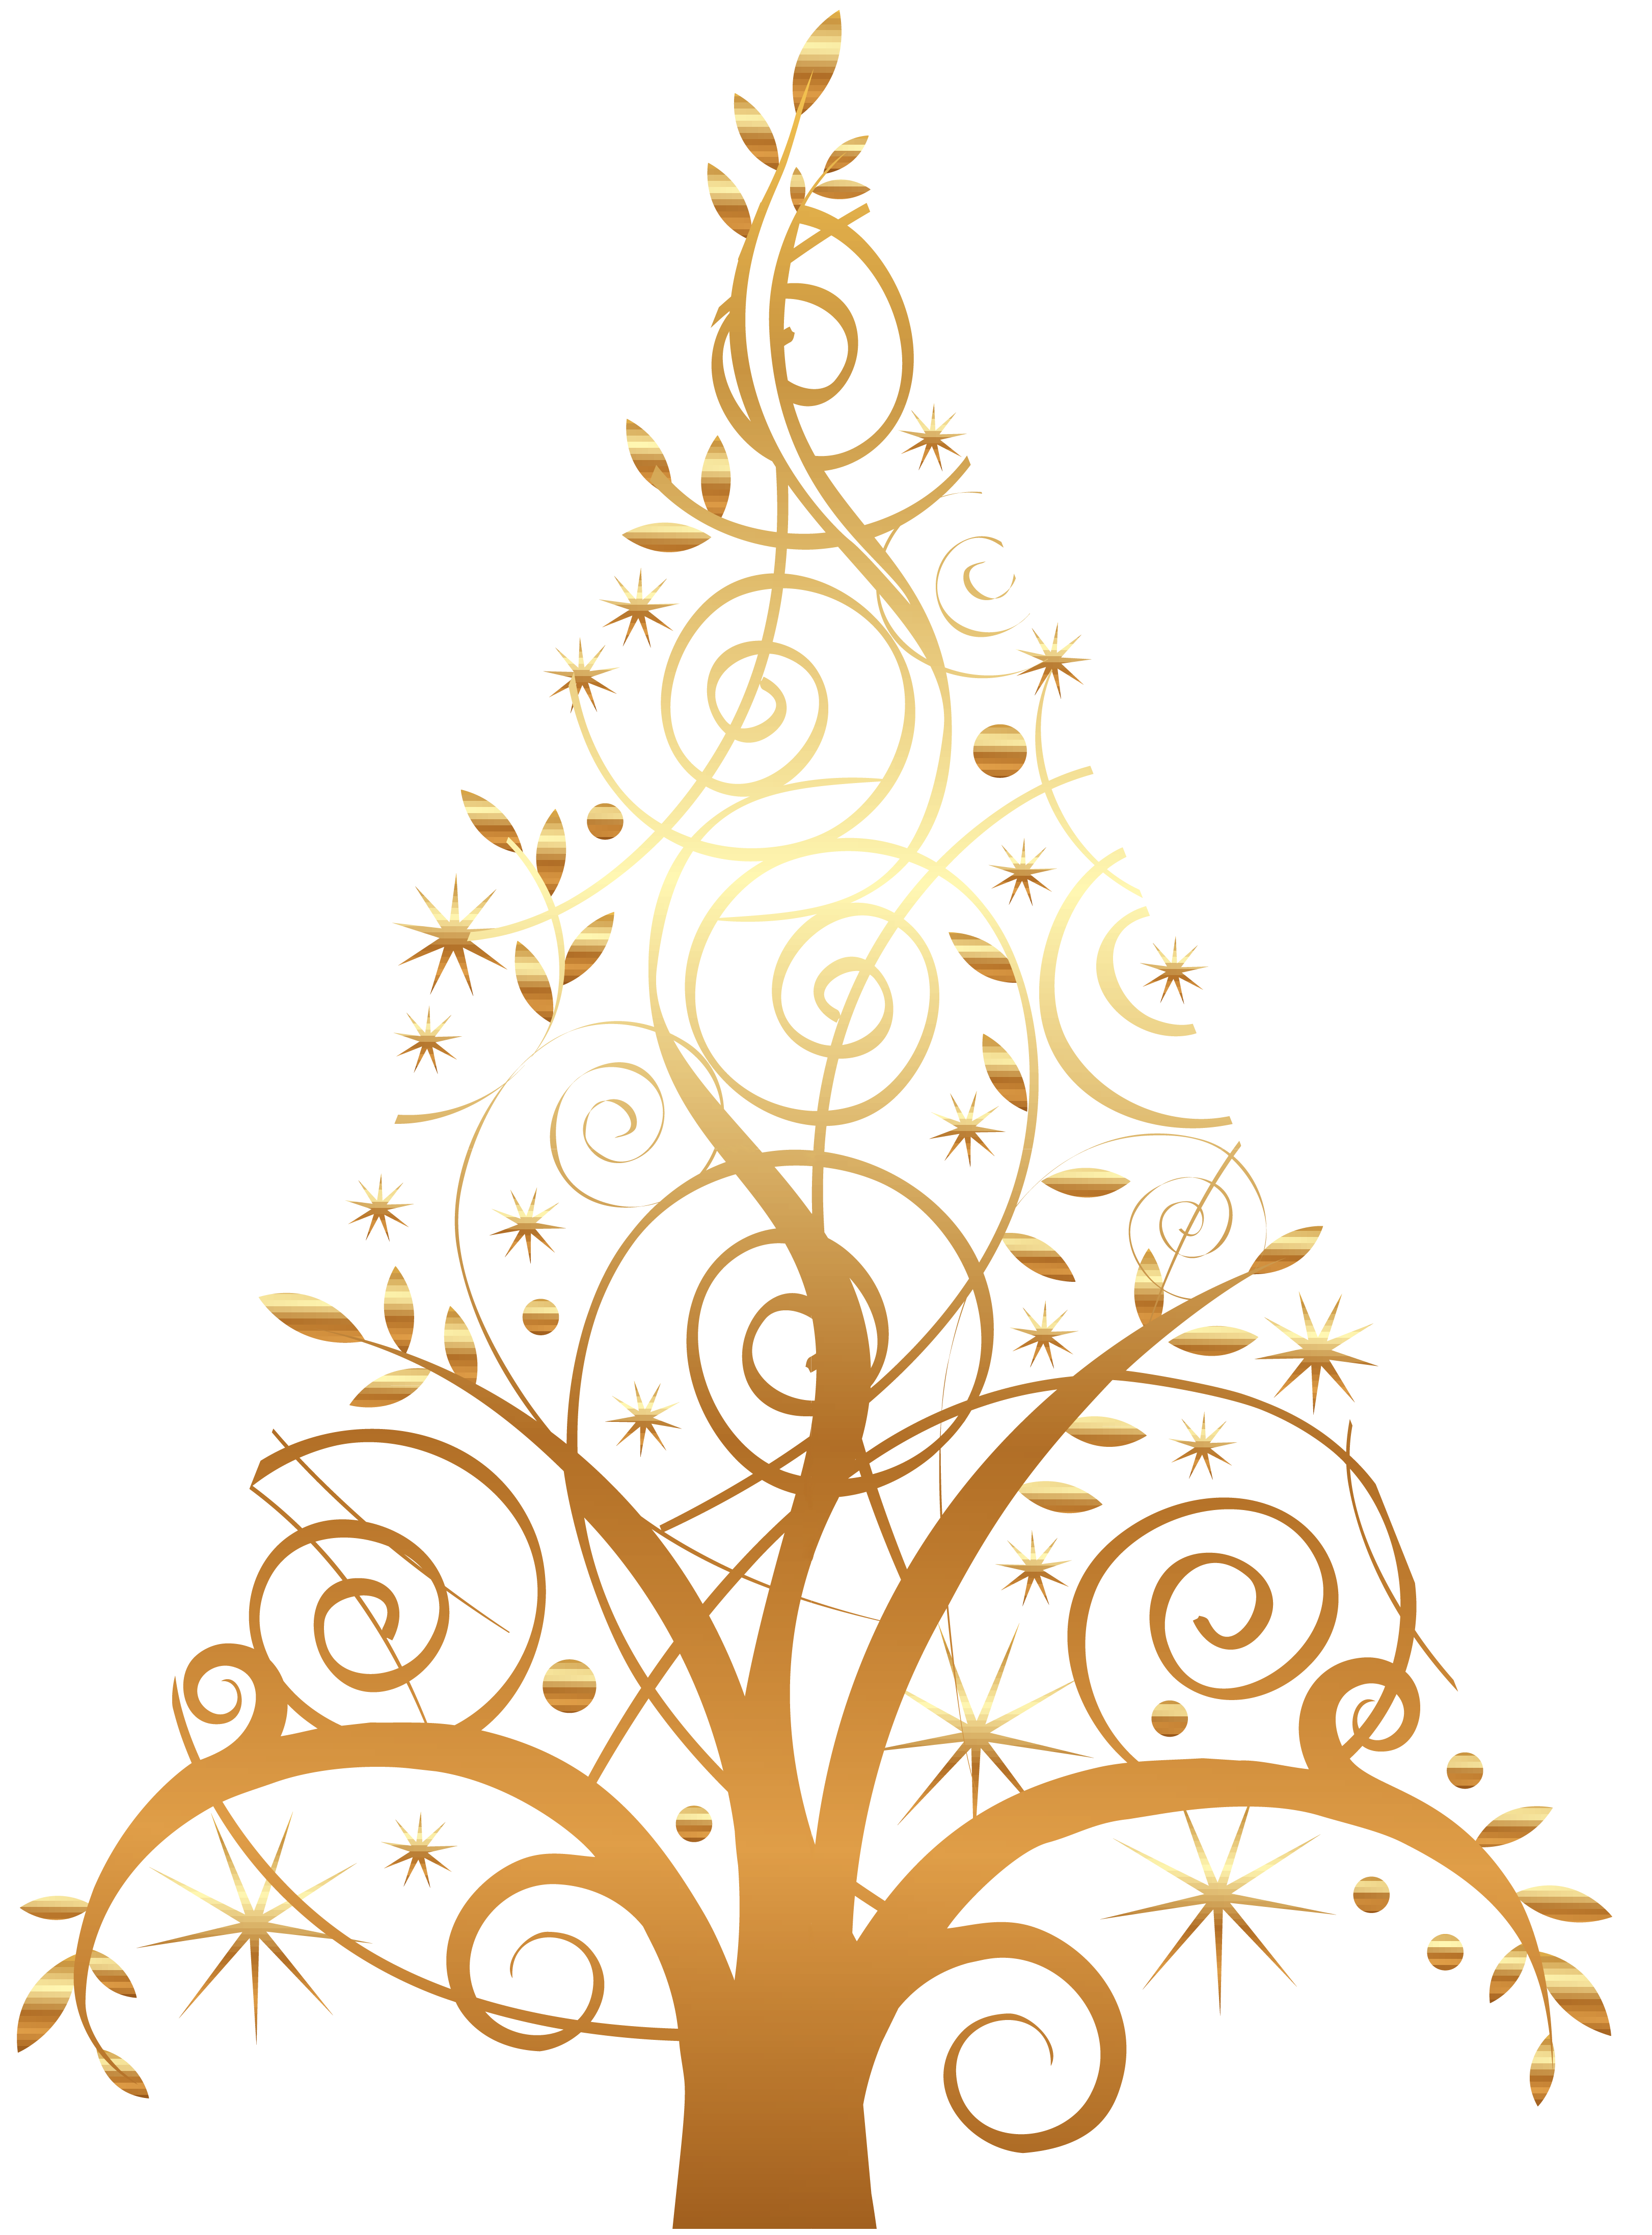 Елочка символ скопировать. Елка символ. Рождественская елка символ. Символ елки цветок. Картинка Новогодняя елка символ Красноярска.